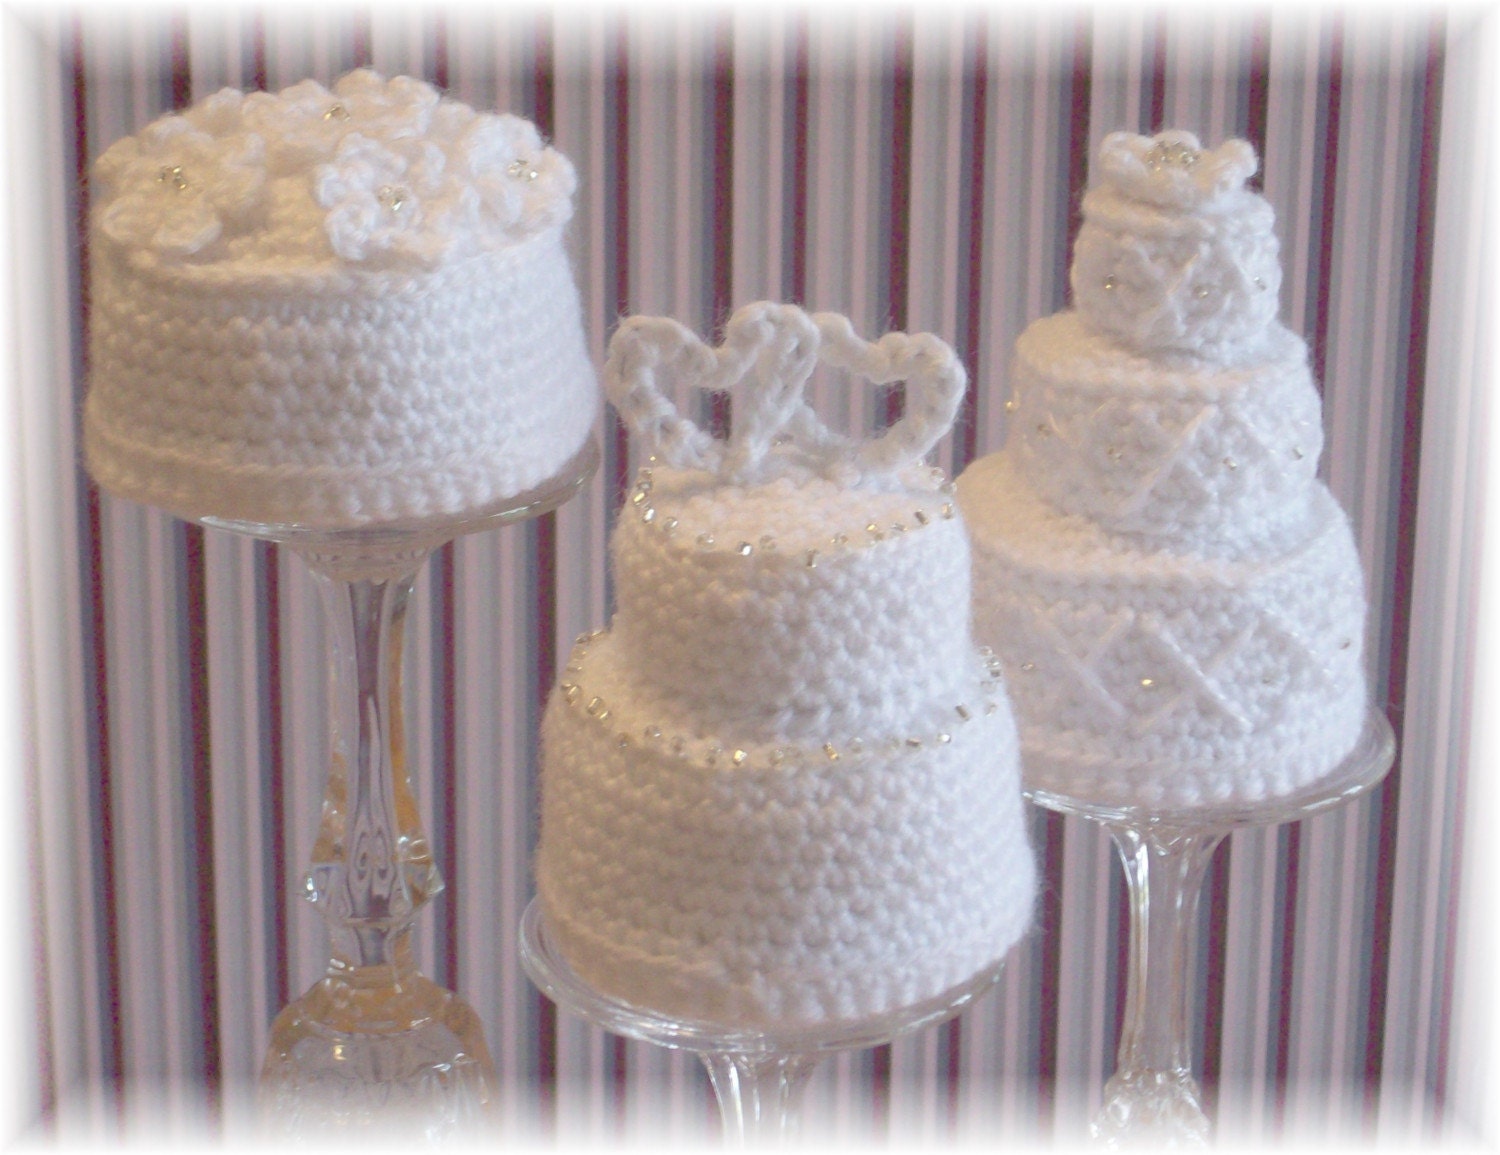 crochet wedding dress The idea of the homemade wedding favor ideas sprung